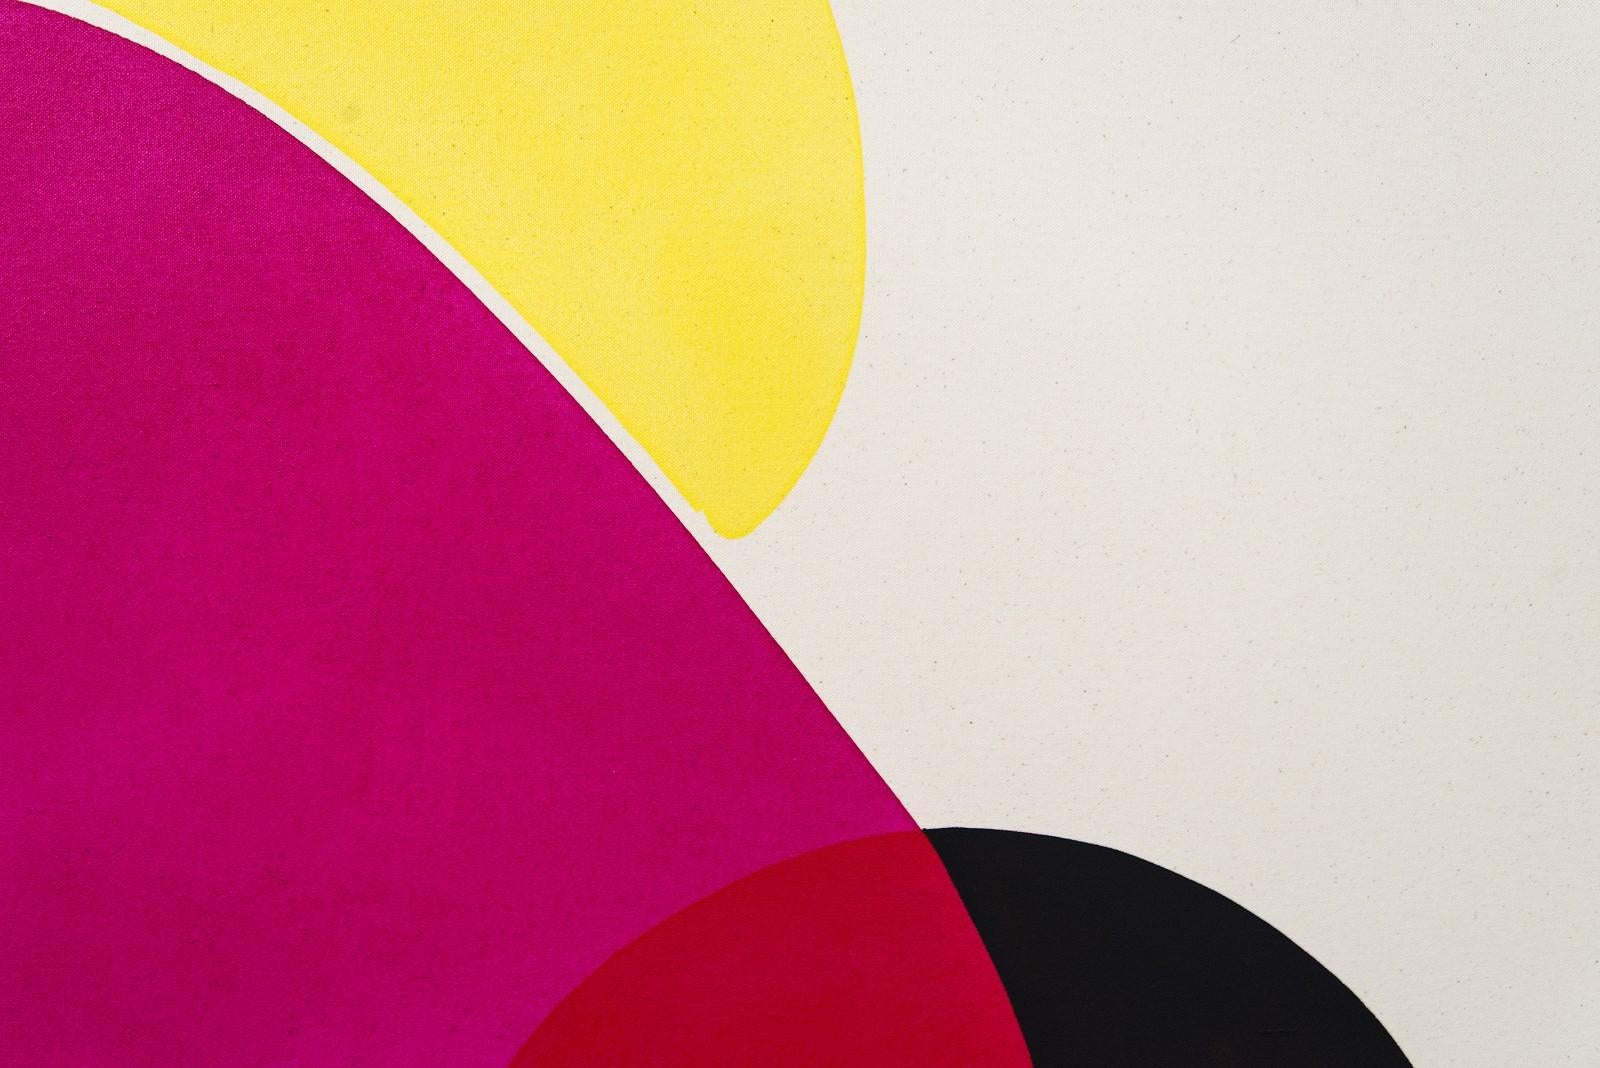 Hiding Sun with Black – leuchtende, farbenfrohe, sich überschneidende abstrakte Formen auf Leinwand (Weiß), Abstract Painting, von Aron Hill